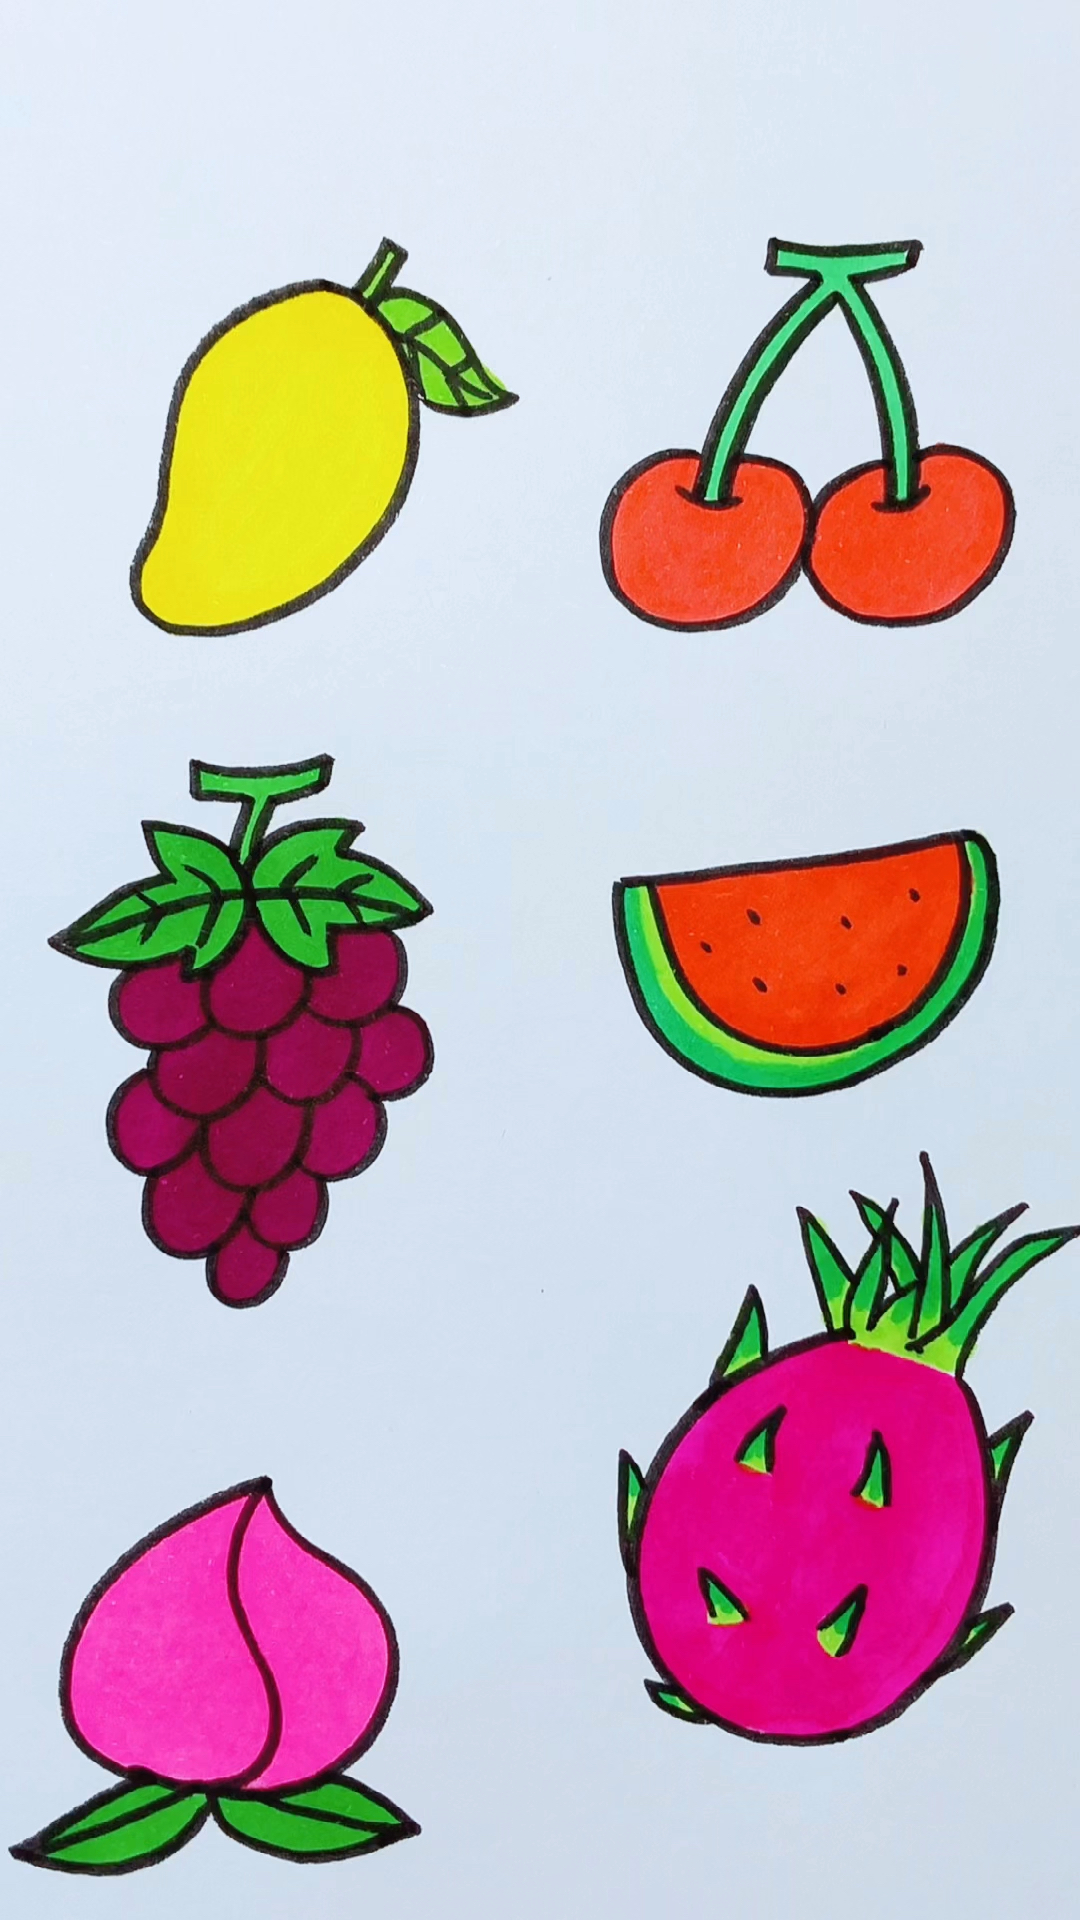 水果简易图画图片